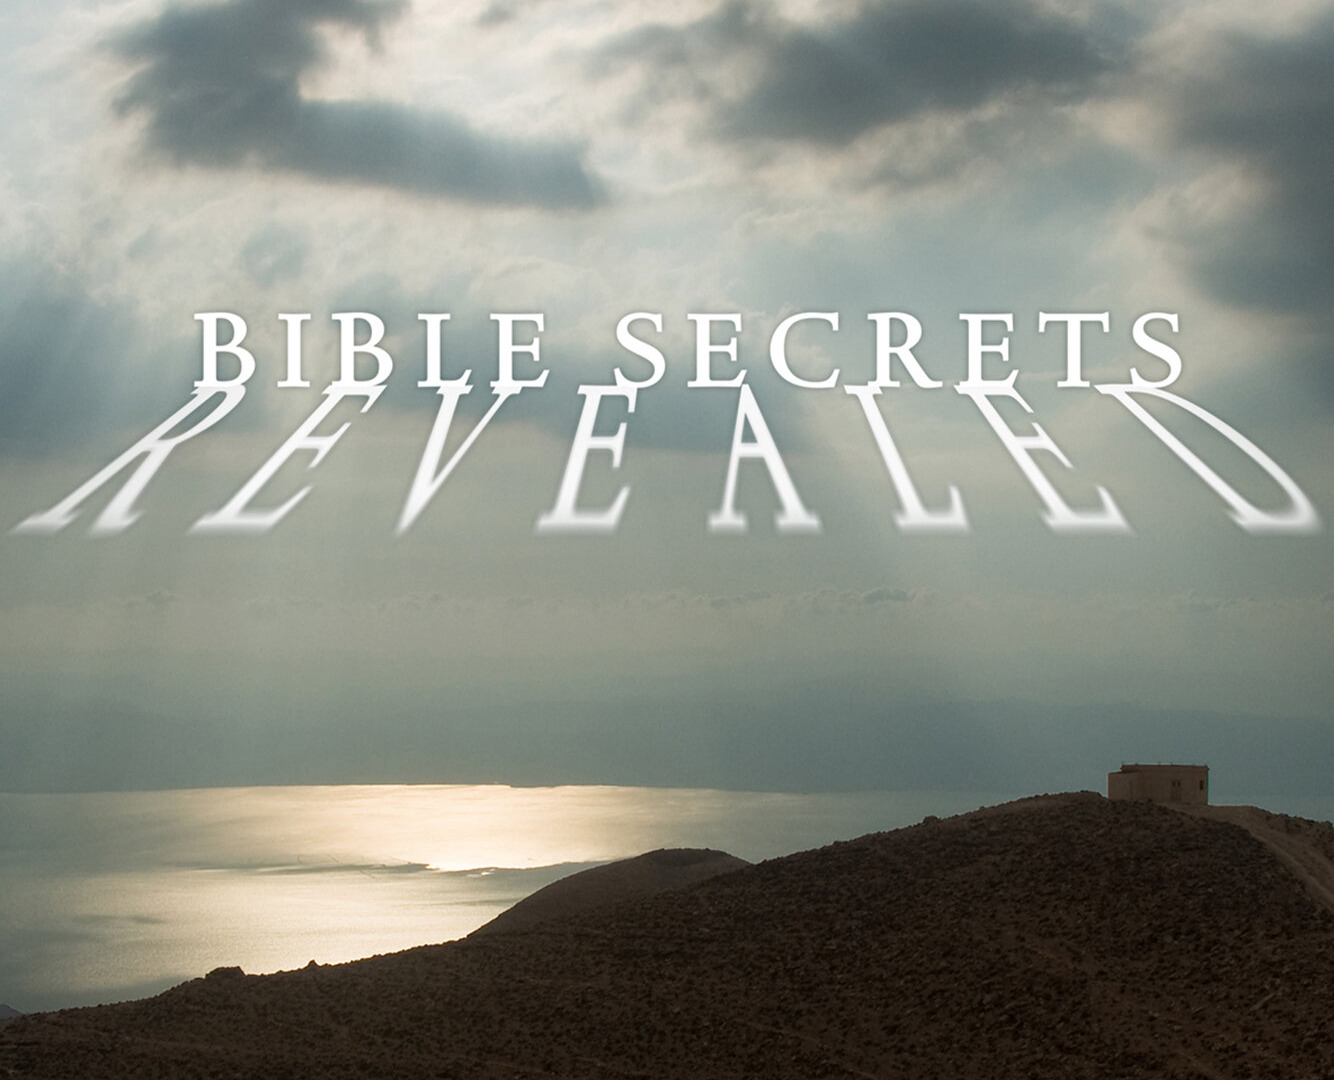 Сериал Bible Secrets Revealed